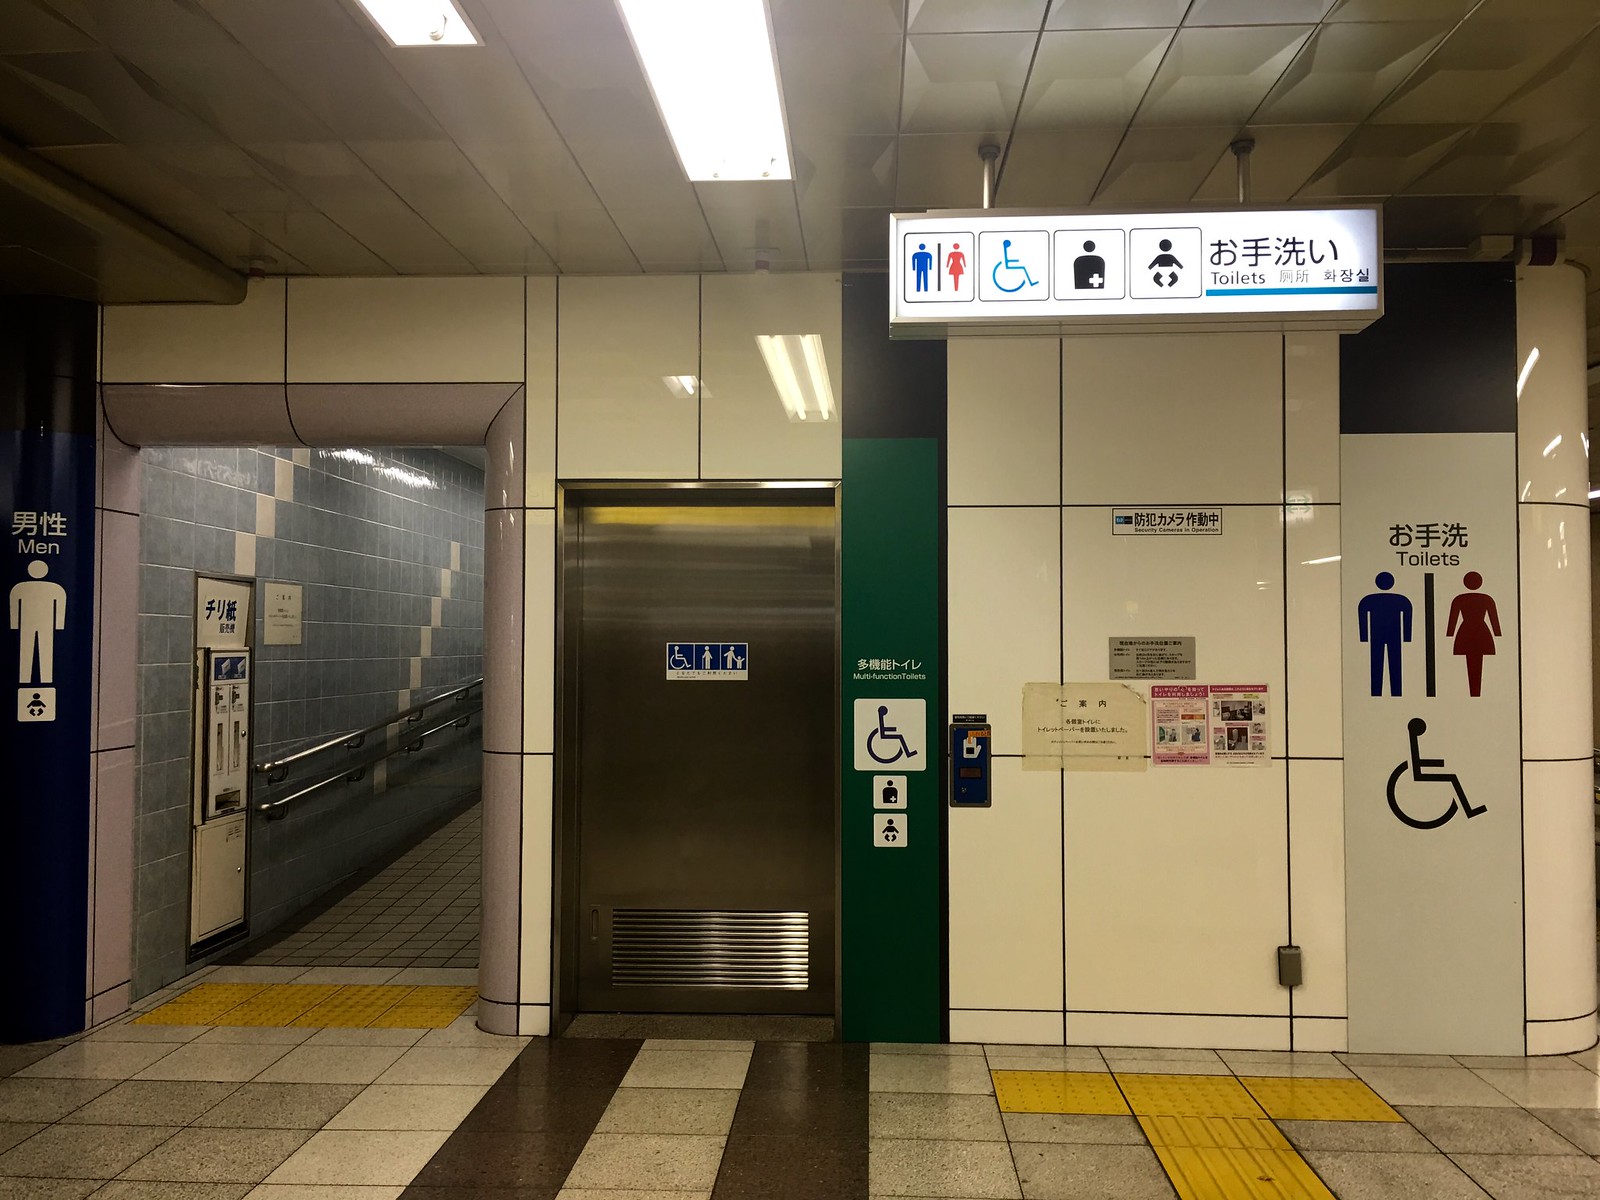 Tokyo Metro and London Tube - Tokyo Metro Tozai Line - Kudanshita Station